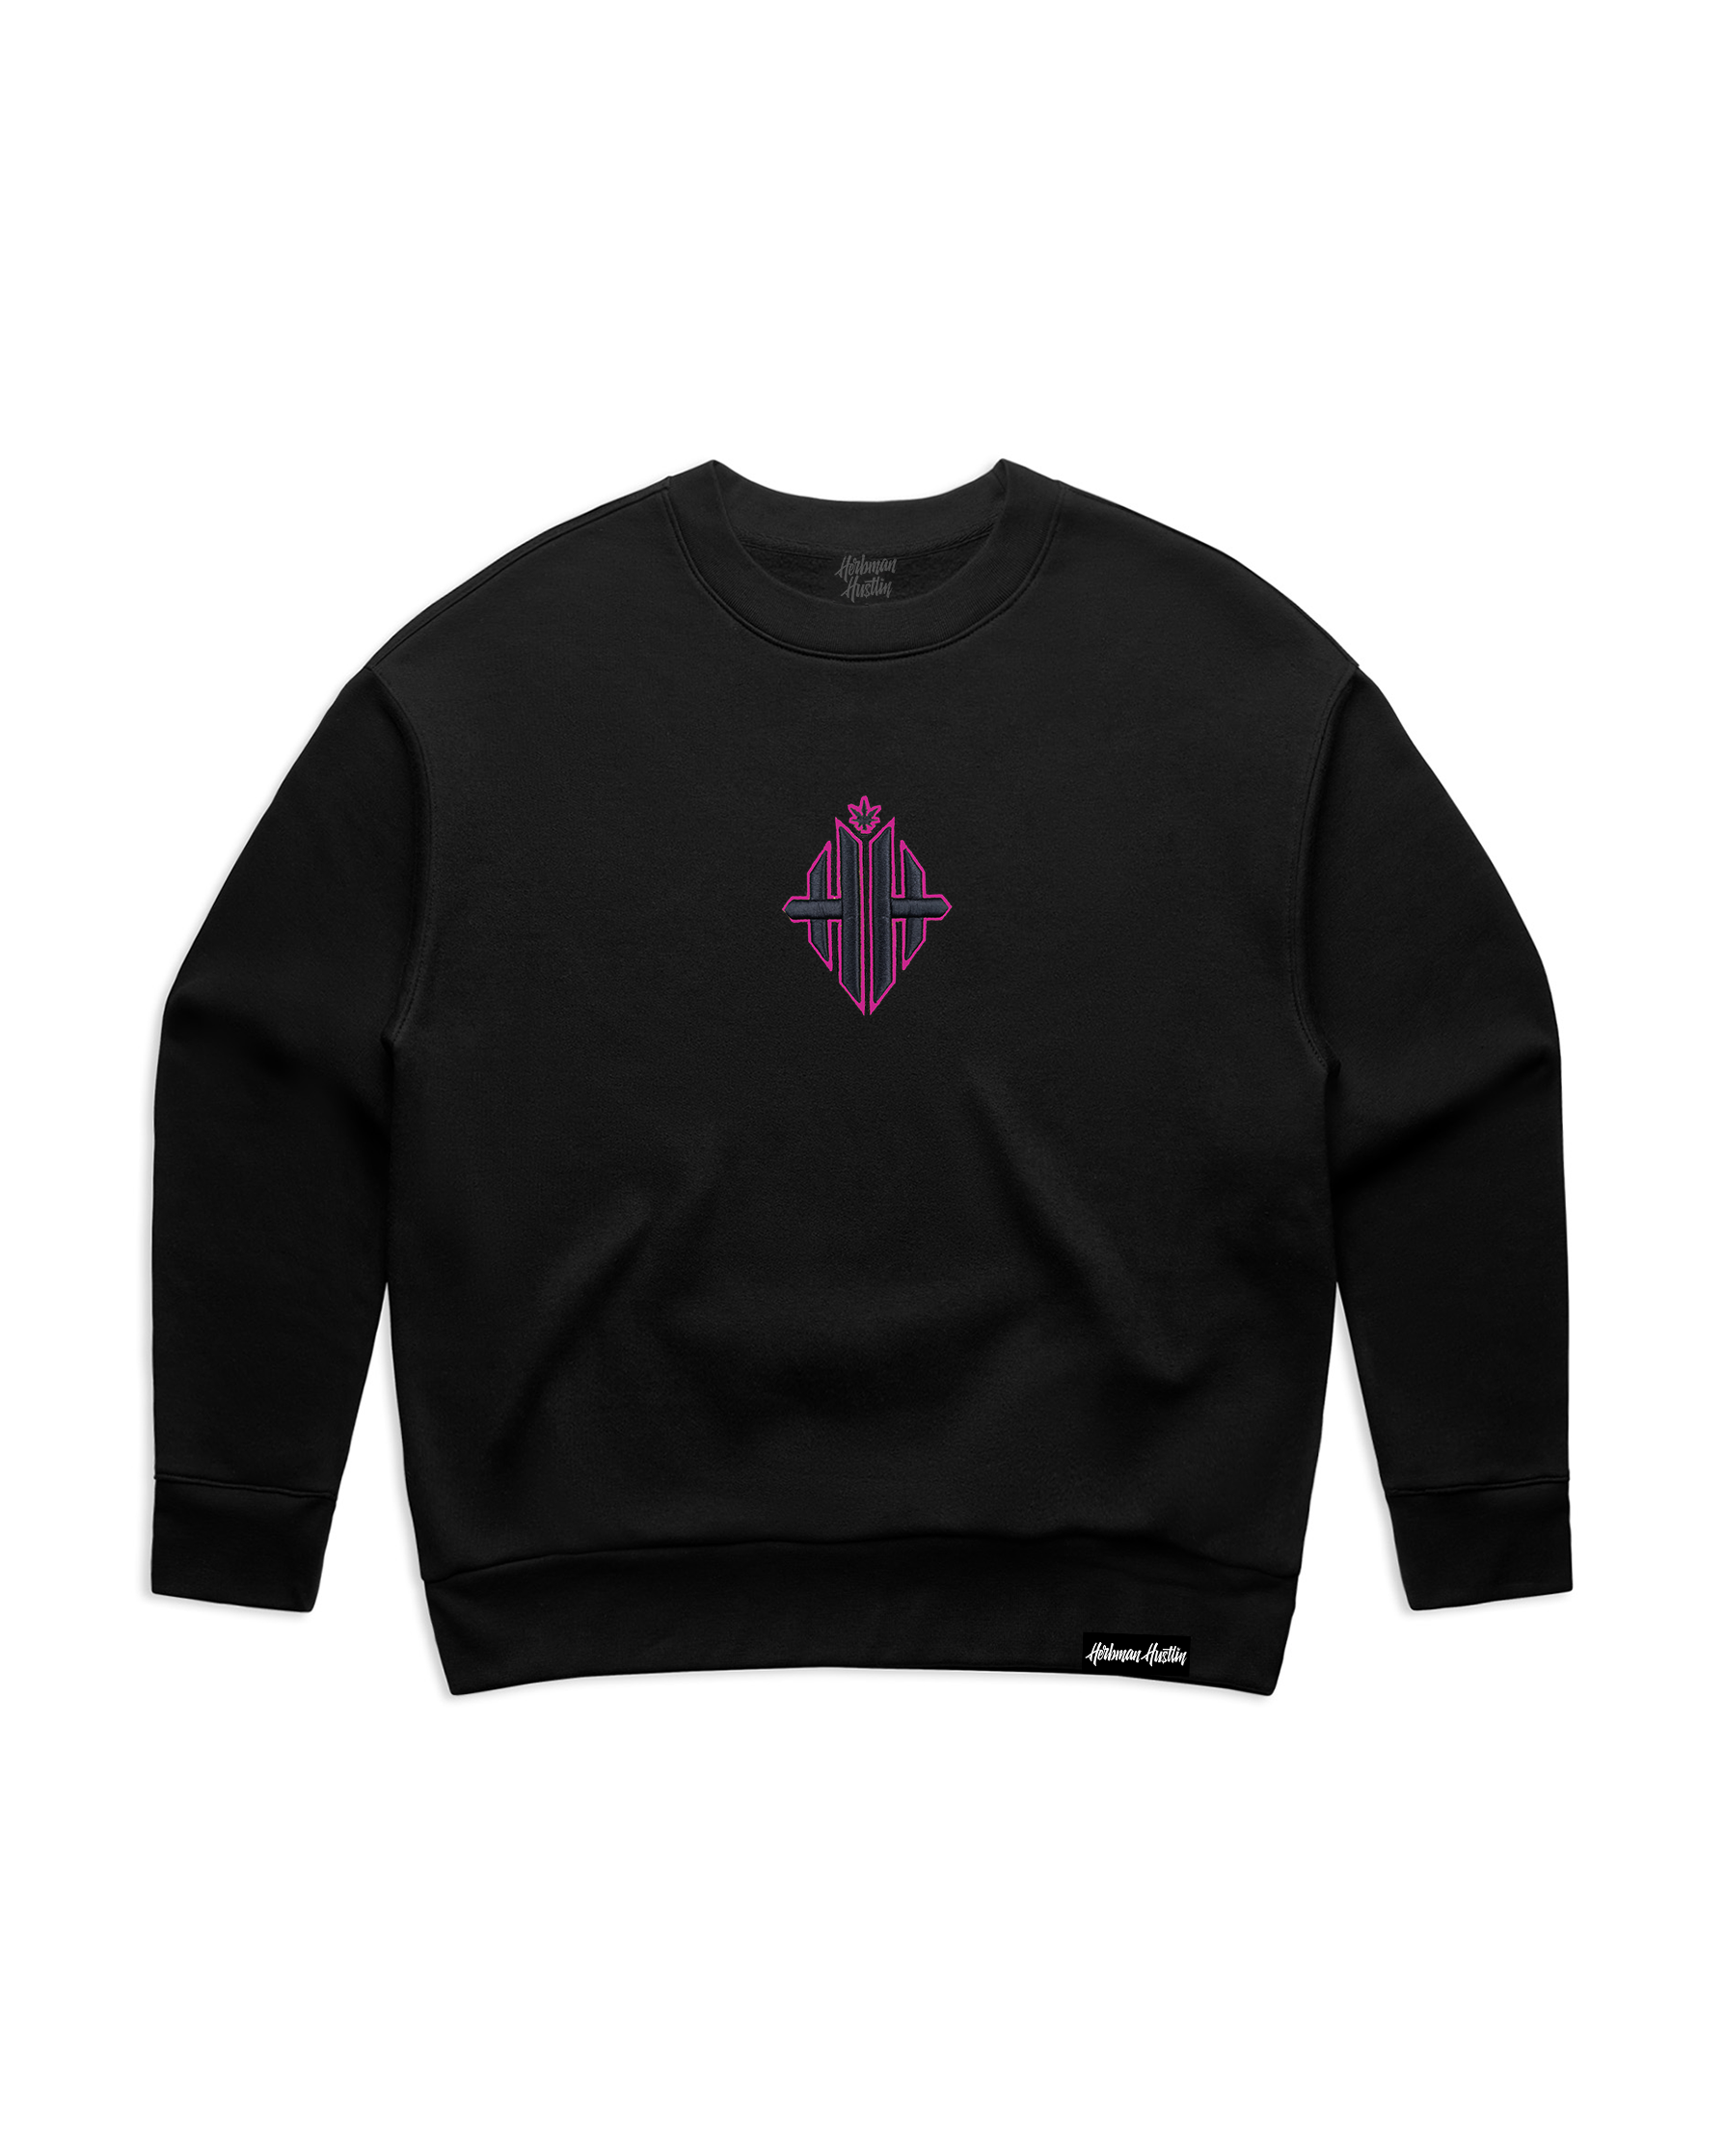 Herbgal Monogram Sweatshirt - Black/Pink